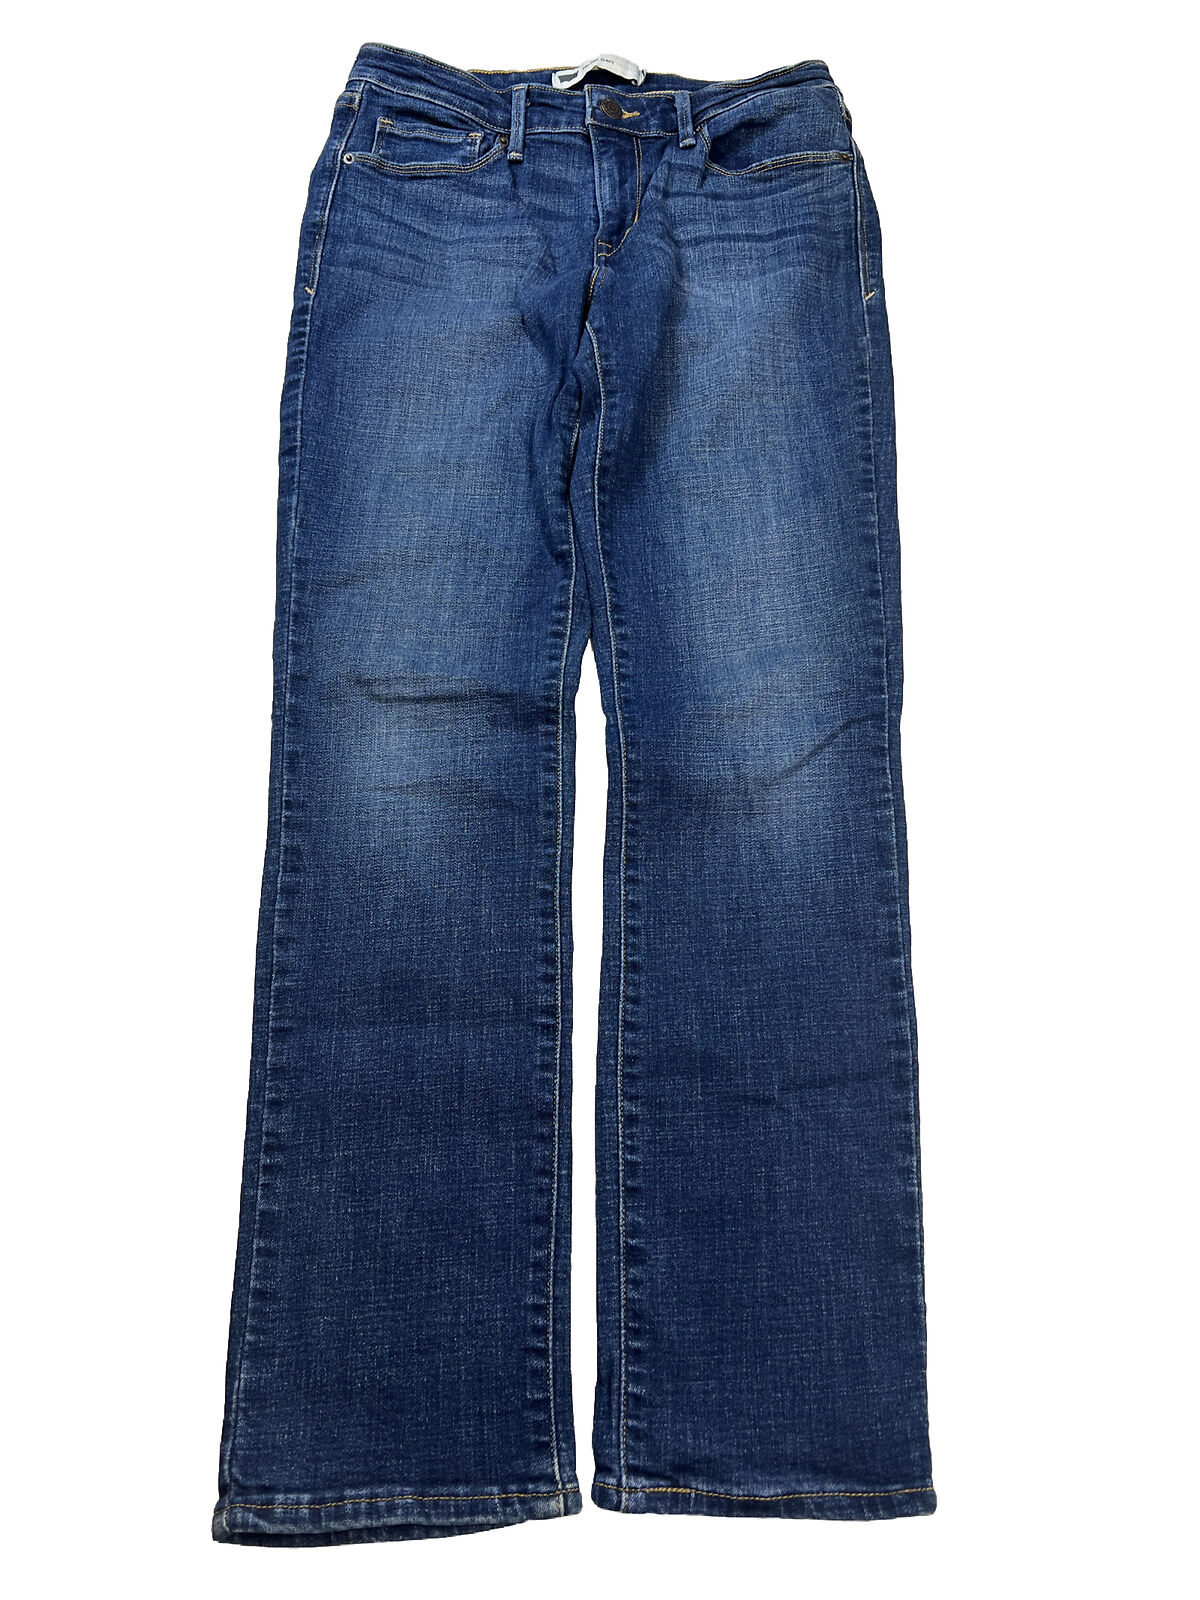 Levi's Jeans elásticos ajustados de tiro medio con lavado oscuro para mujer - 6